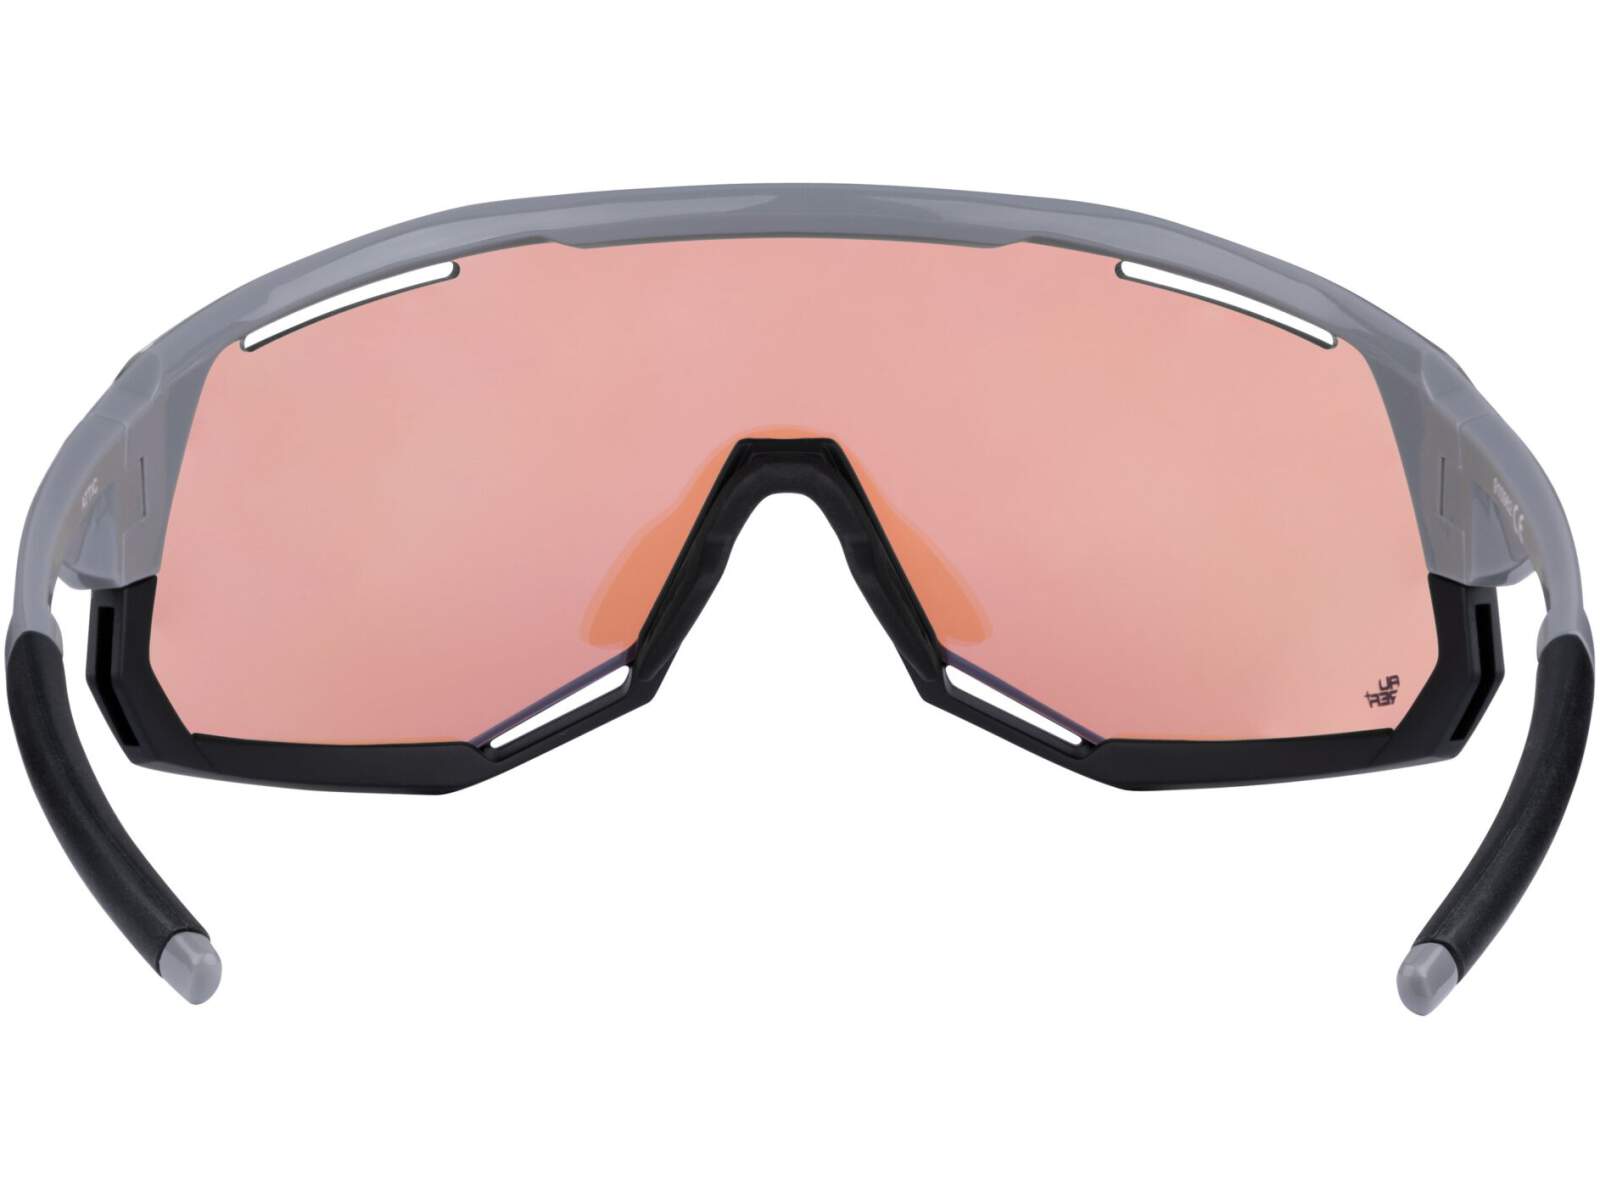 Okulary rowerowe Force ATTIC szkła różowe kontrastowe